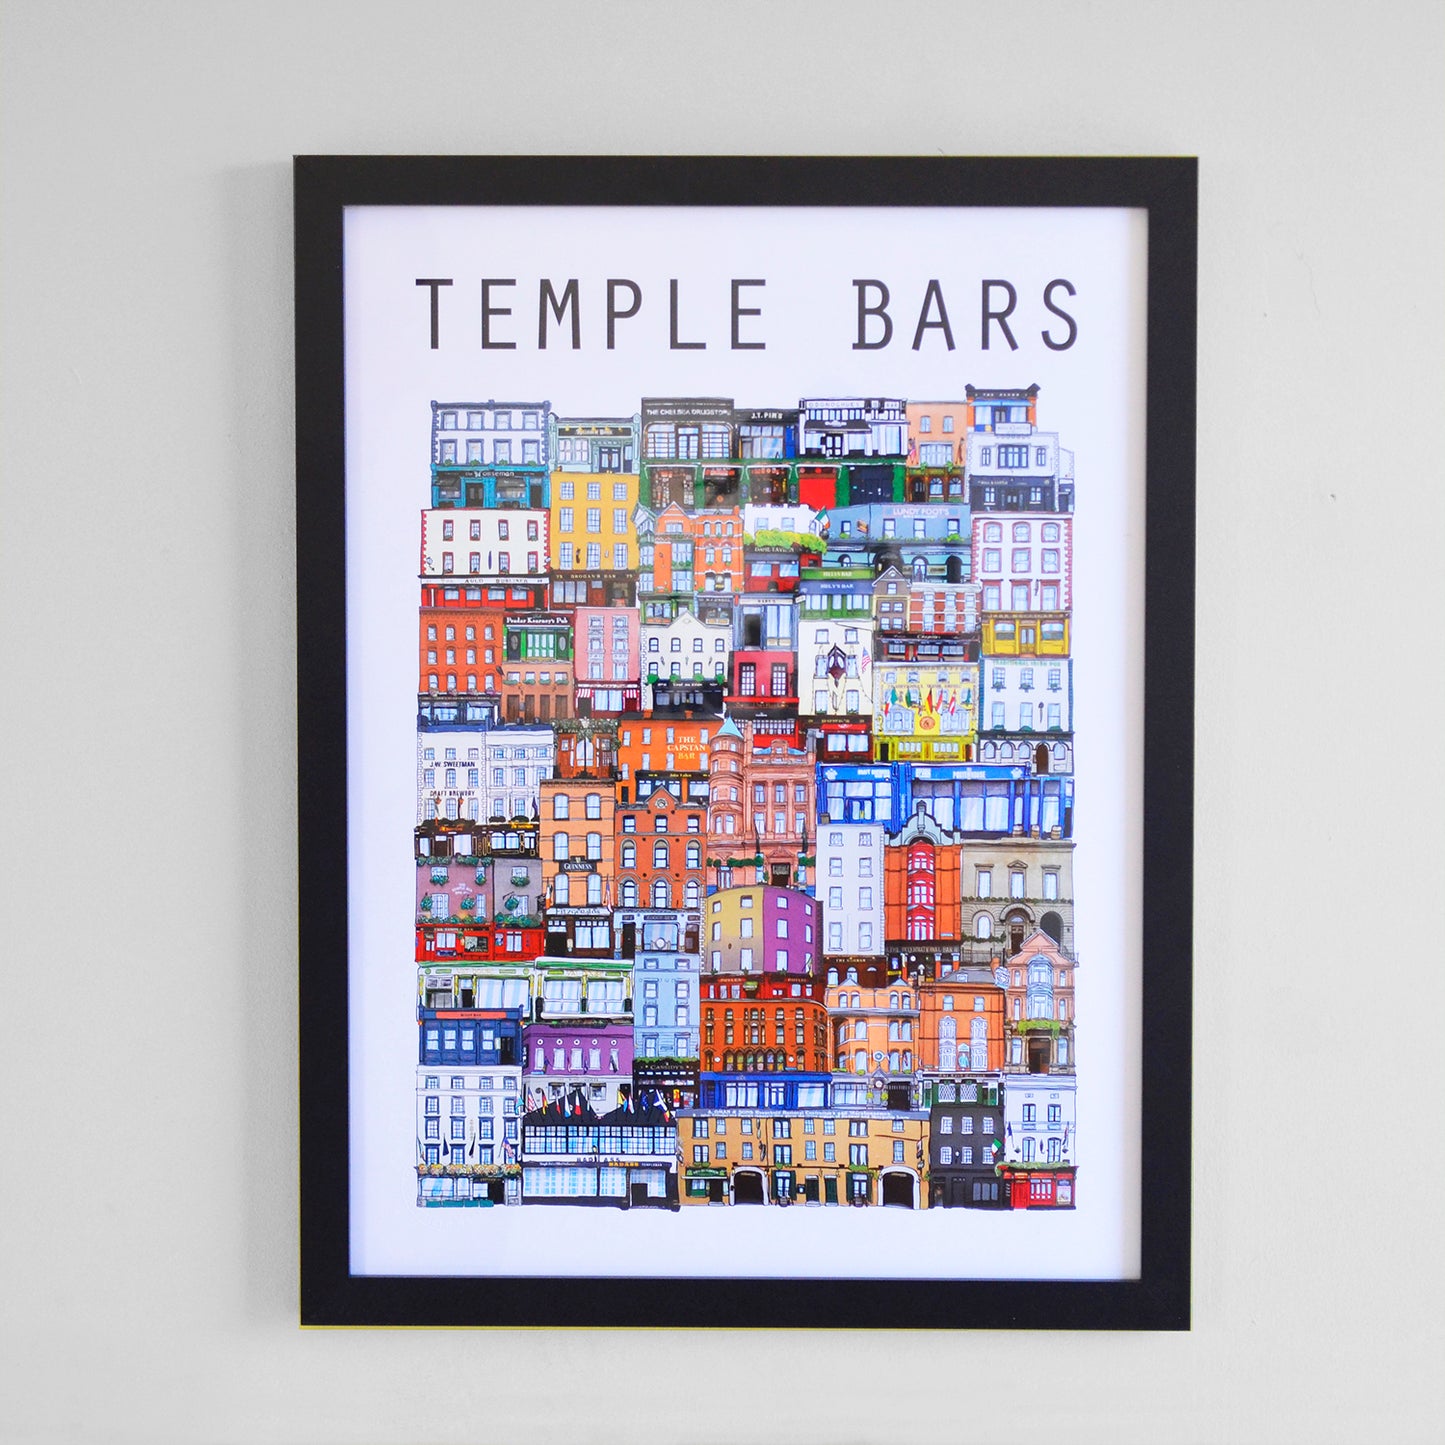 300x400mm Framed Temple Bars